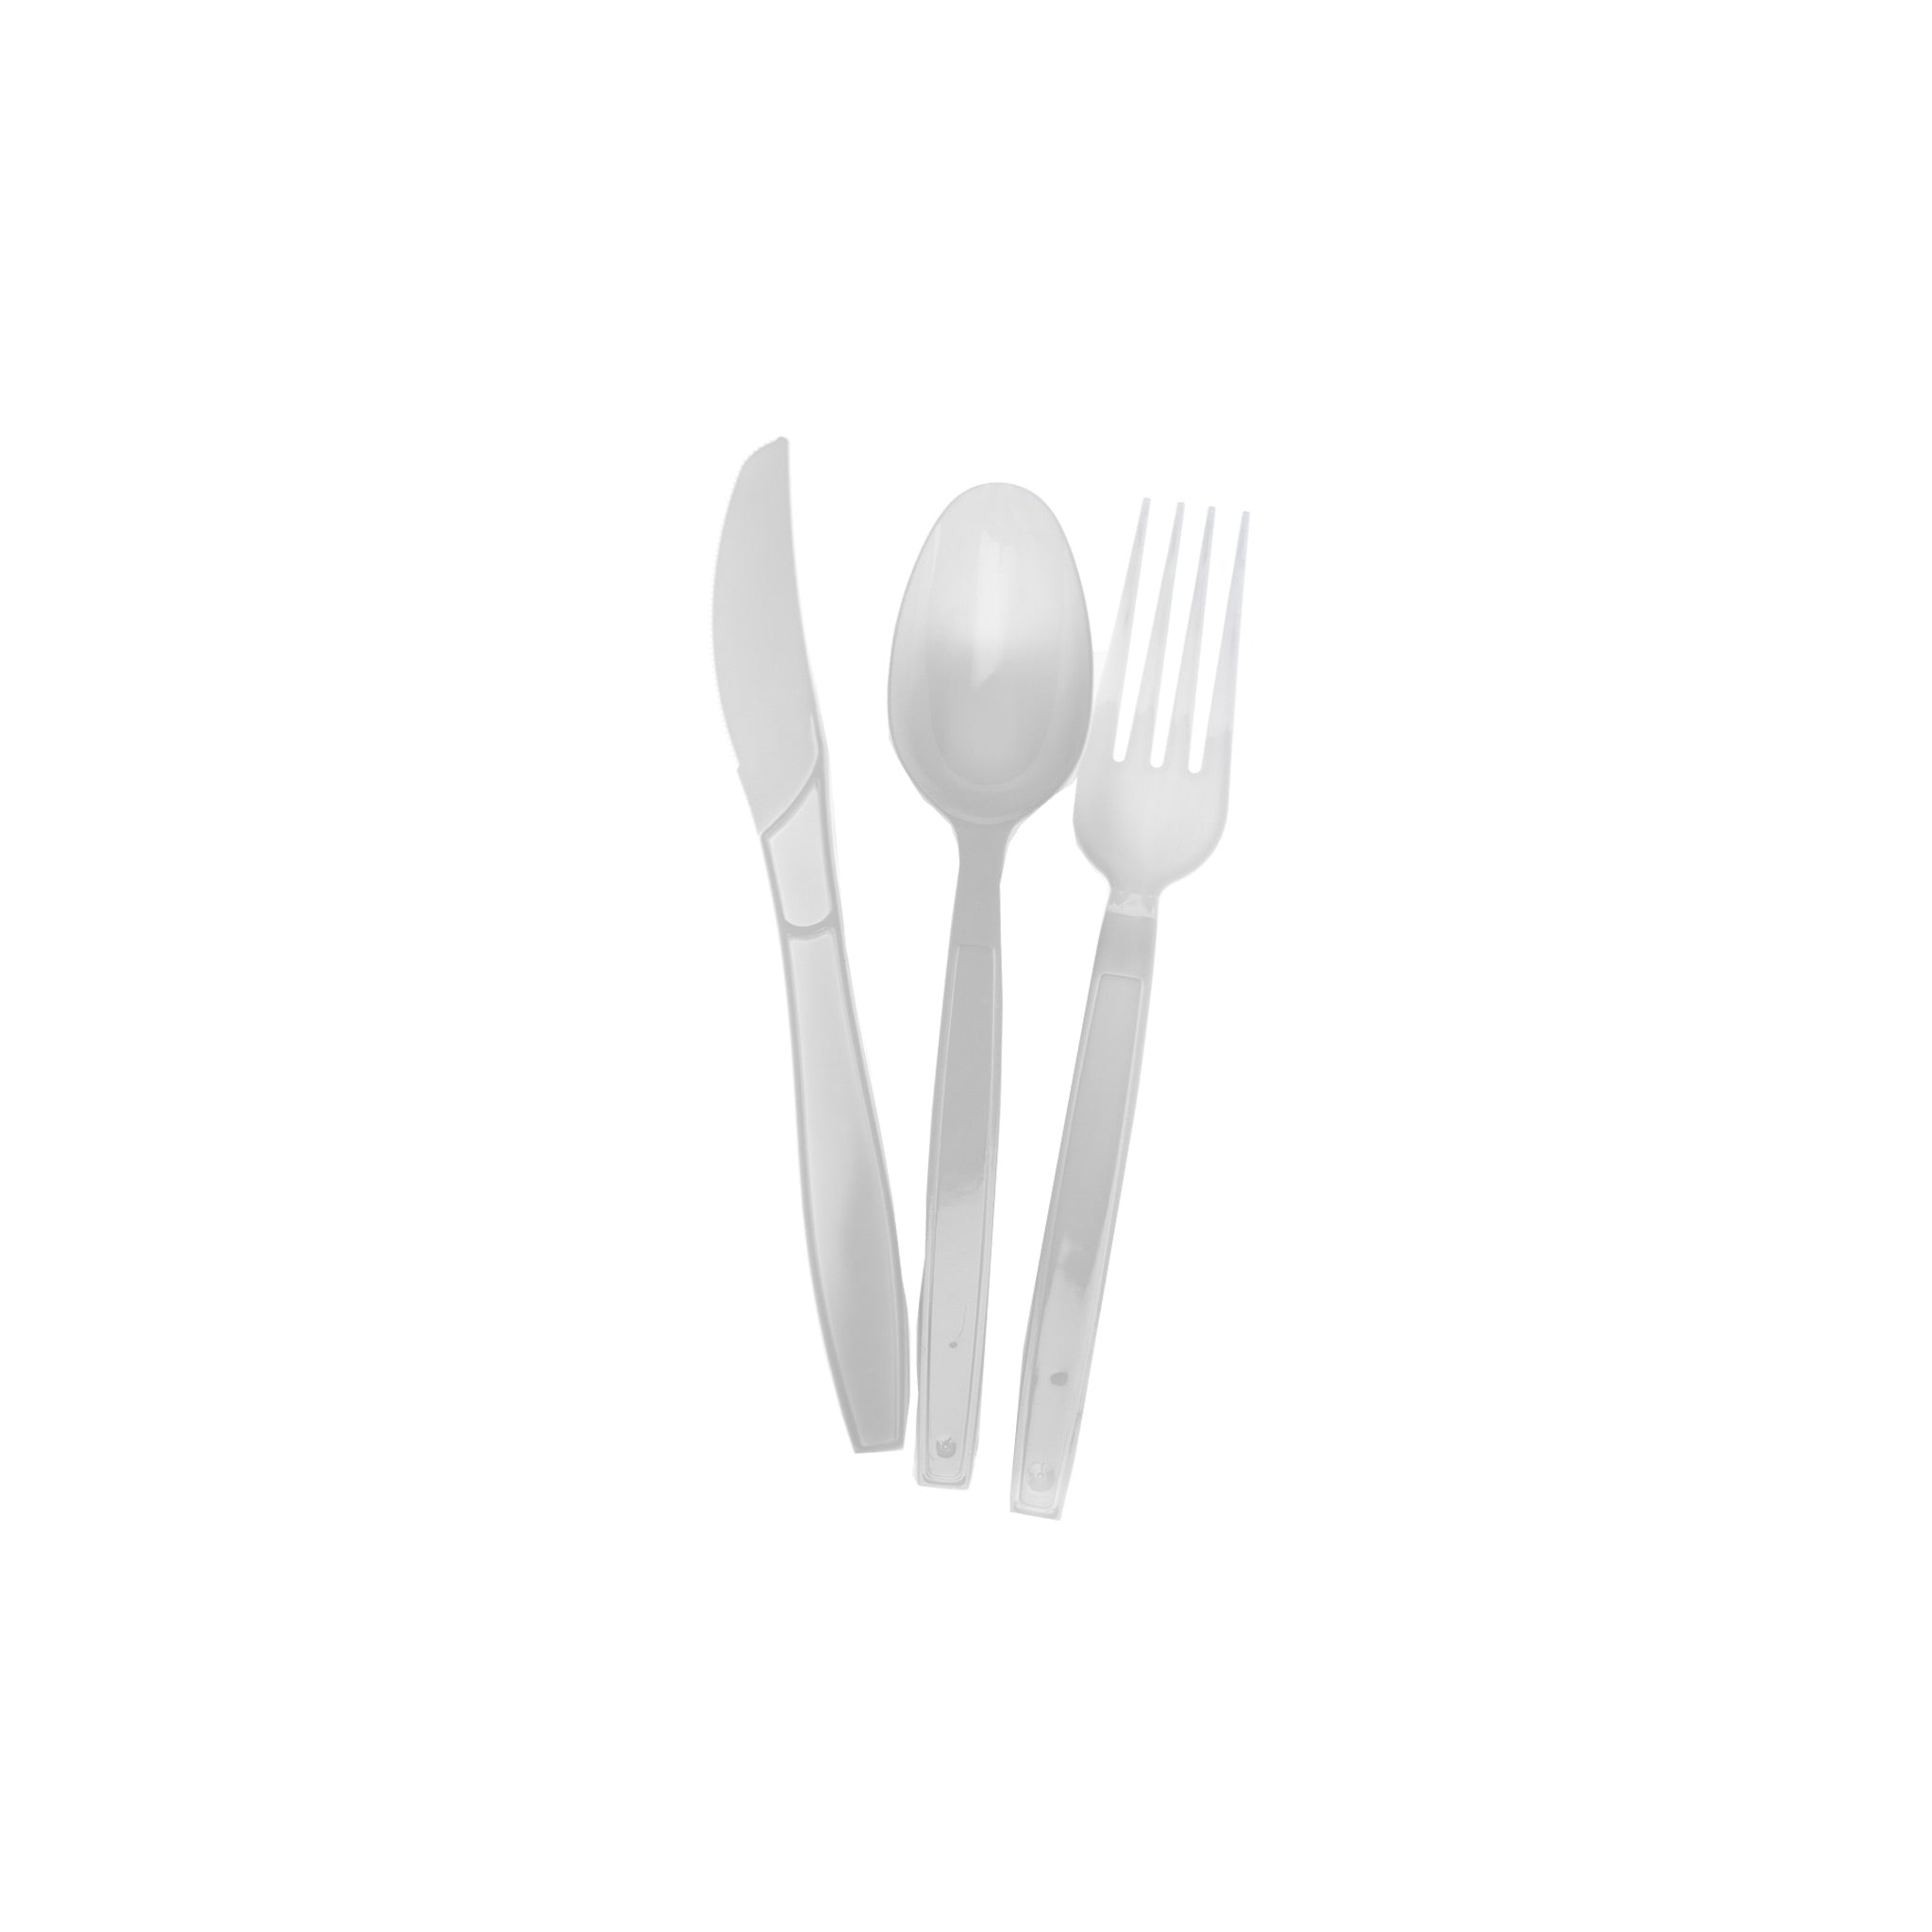 Heavy Duty Cutlery Set, White (Spoon/Fork/Knife/ Napkin)-6 Gram Each 250 Sets